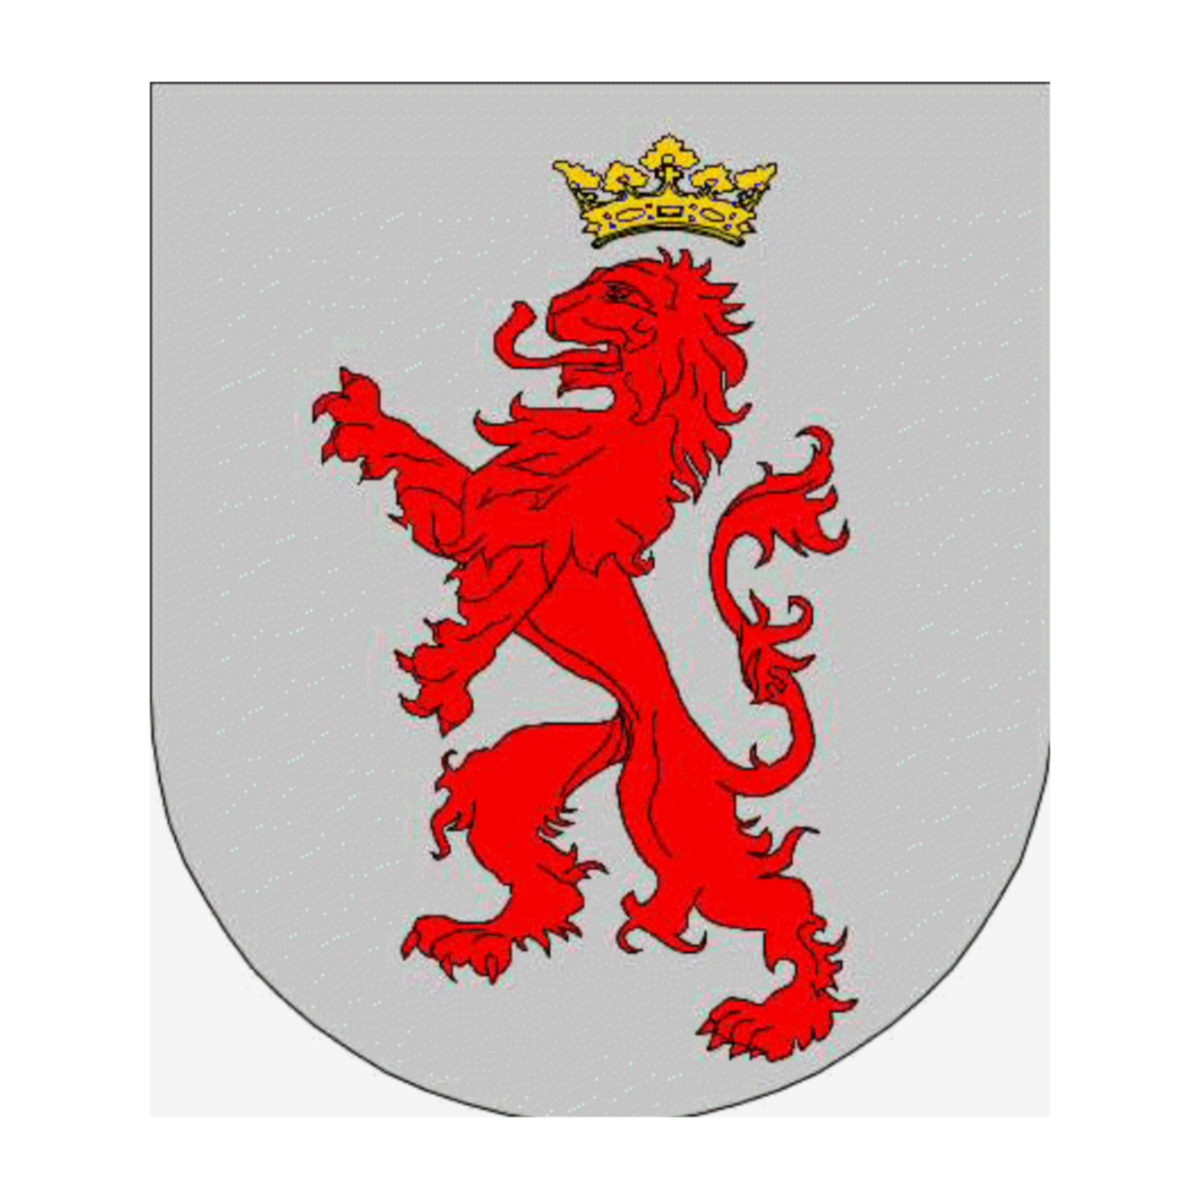 Coat of arms of familySilva